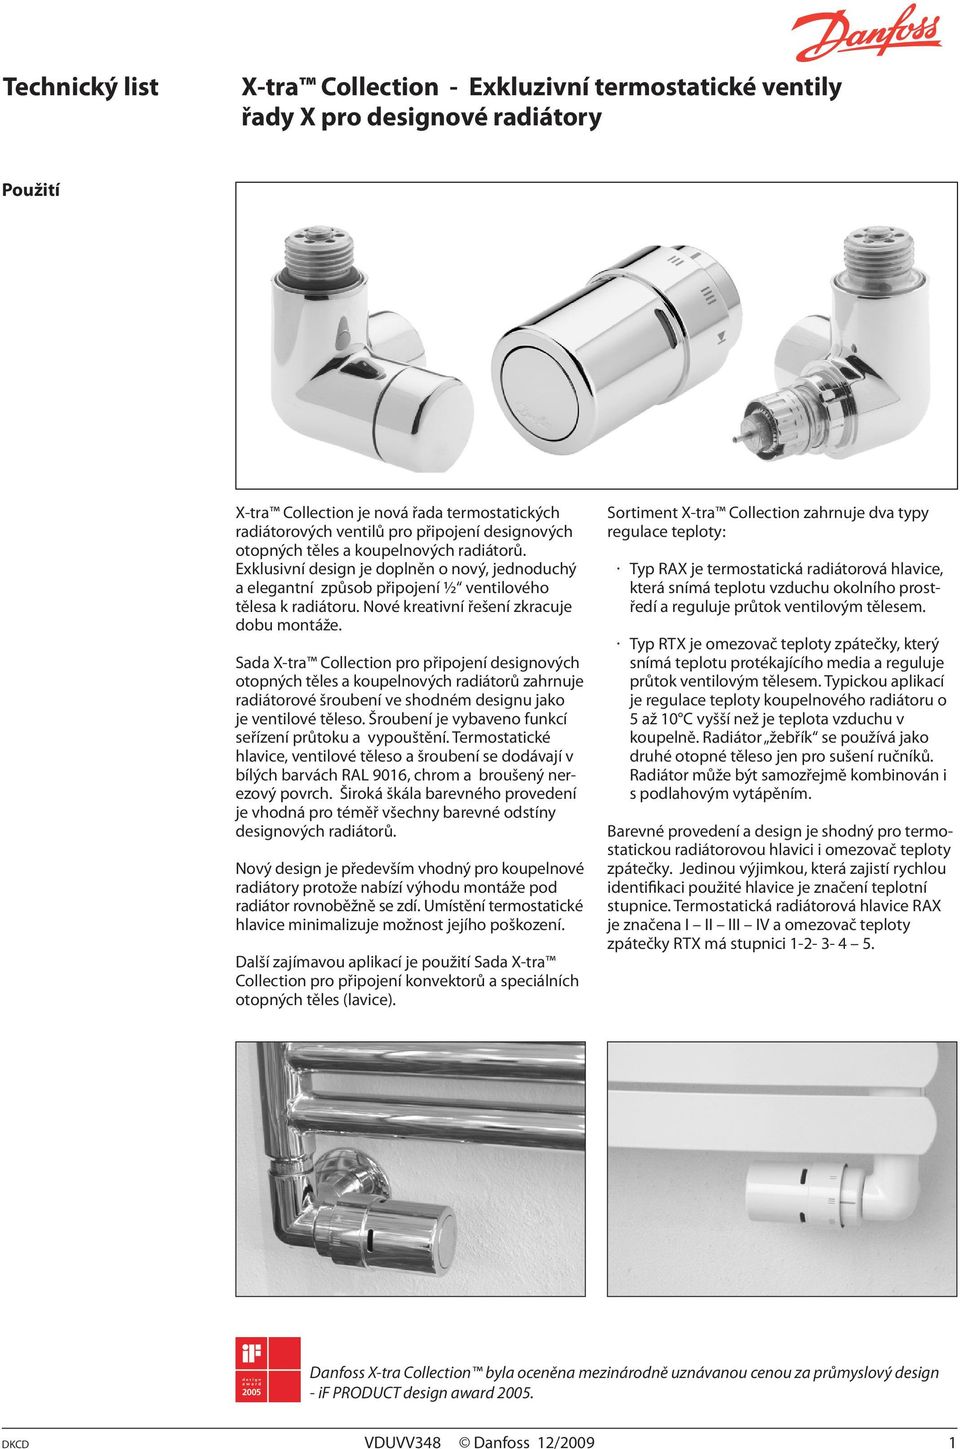 Sada X-tra Collection pro připojení designových otopných těles a koupelnových radiátorů zahrnuje radiátorové šroubení ve shodném designu jako je ventilové těleso.